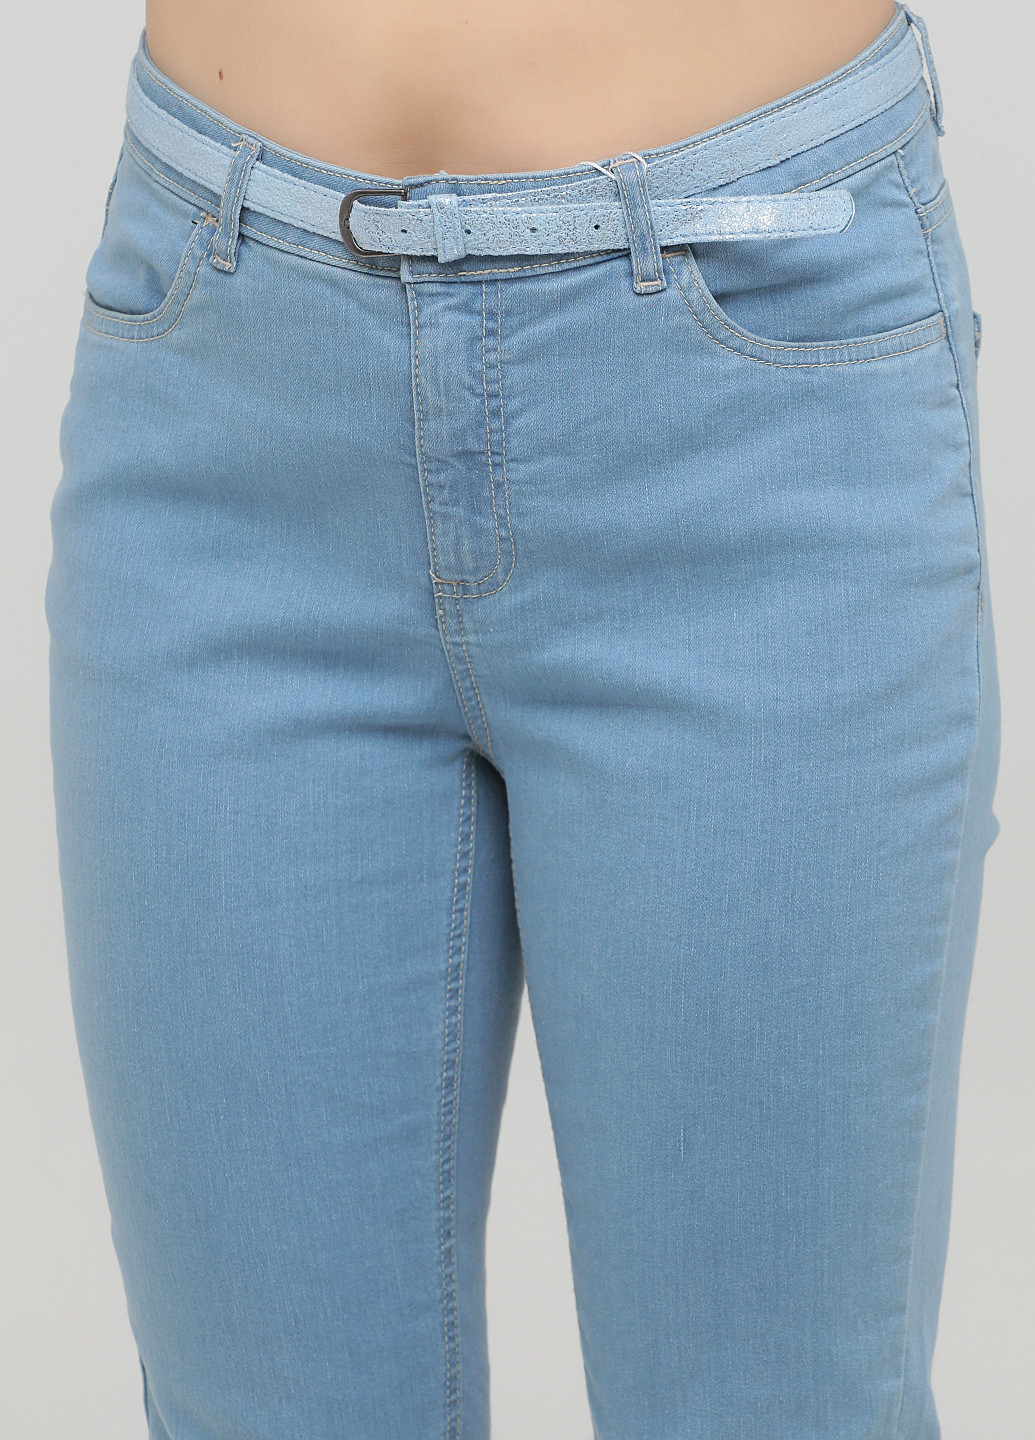 Бриджи Collection L однотонные голубые джинсовые хлопок